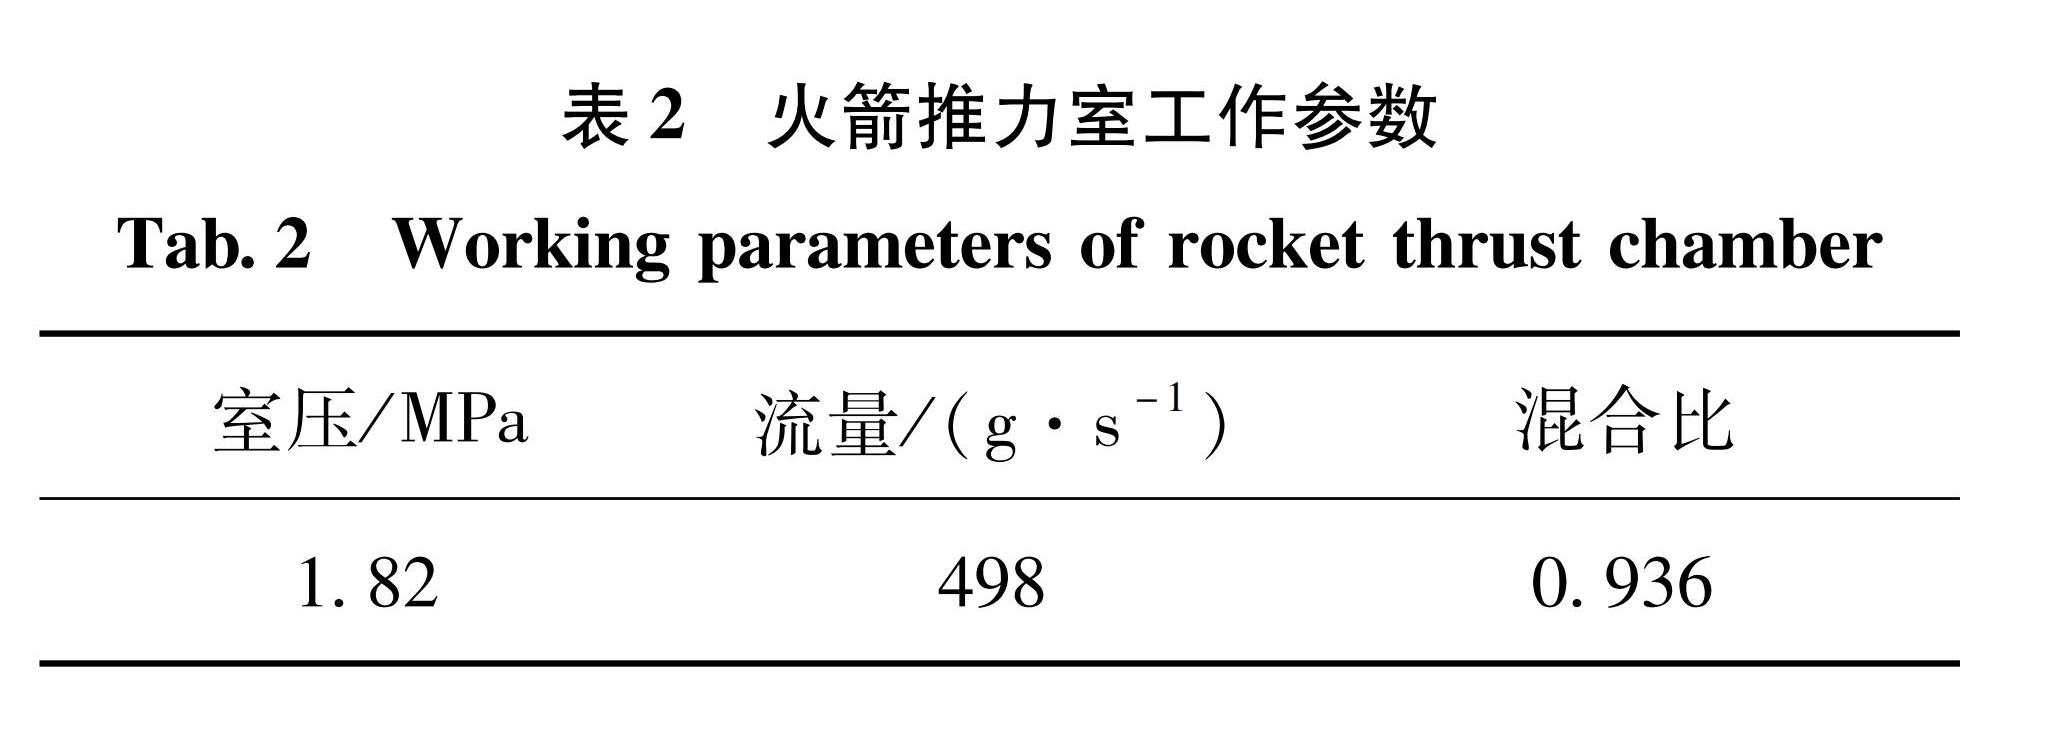 表2 火箭推力室工作参数<br/>Tab.2 Working parameters of rocket thrust chamber